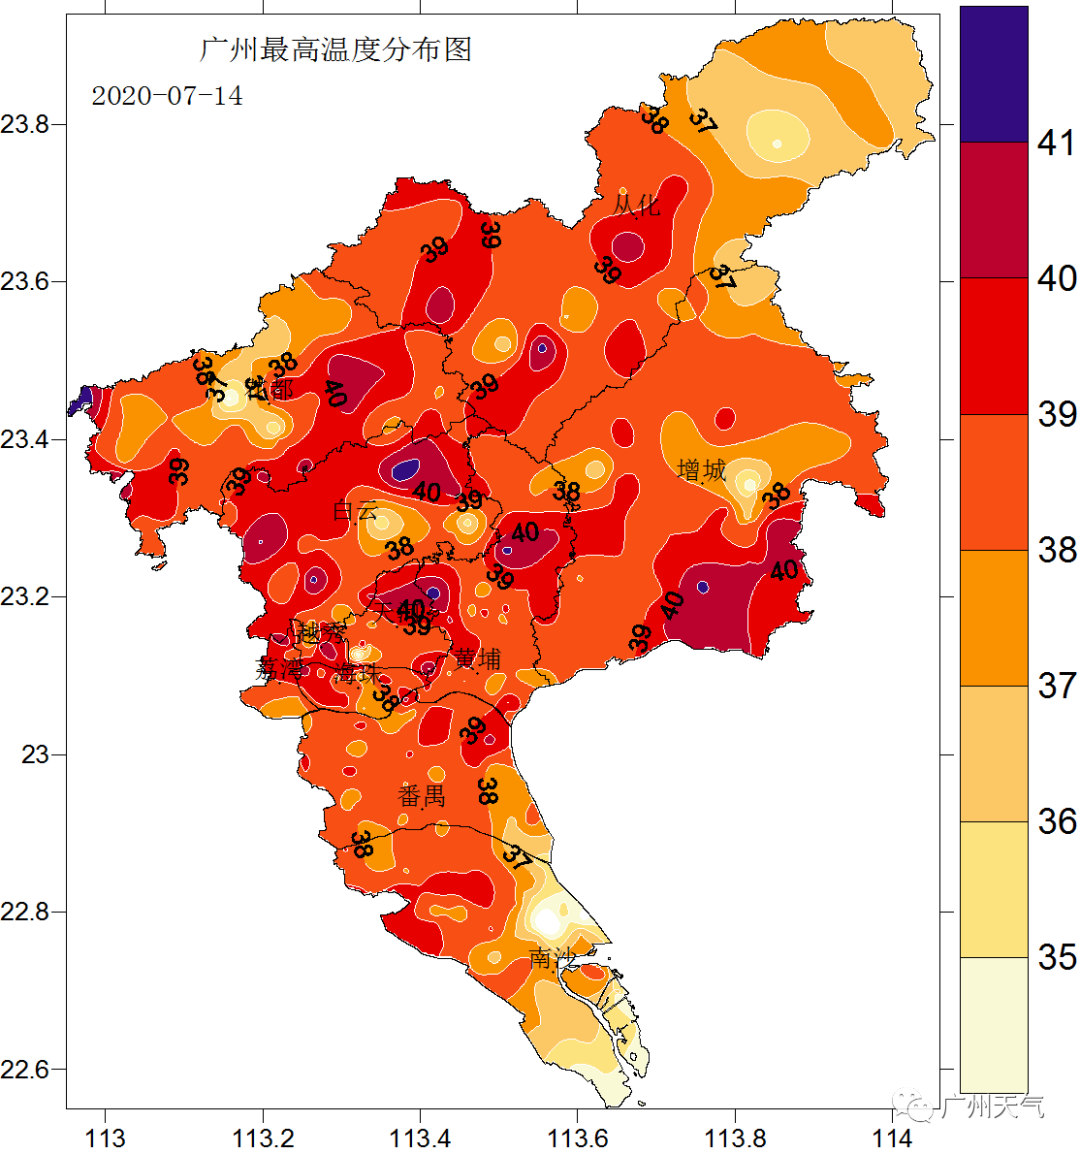 我国河南省遭遇了历史罕见的极端强降雨,人们对气候变化的高度关注